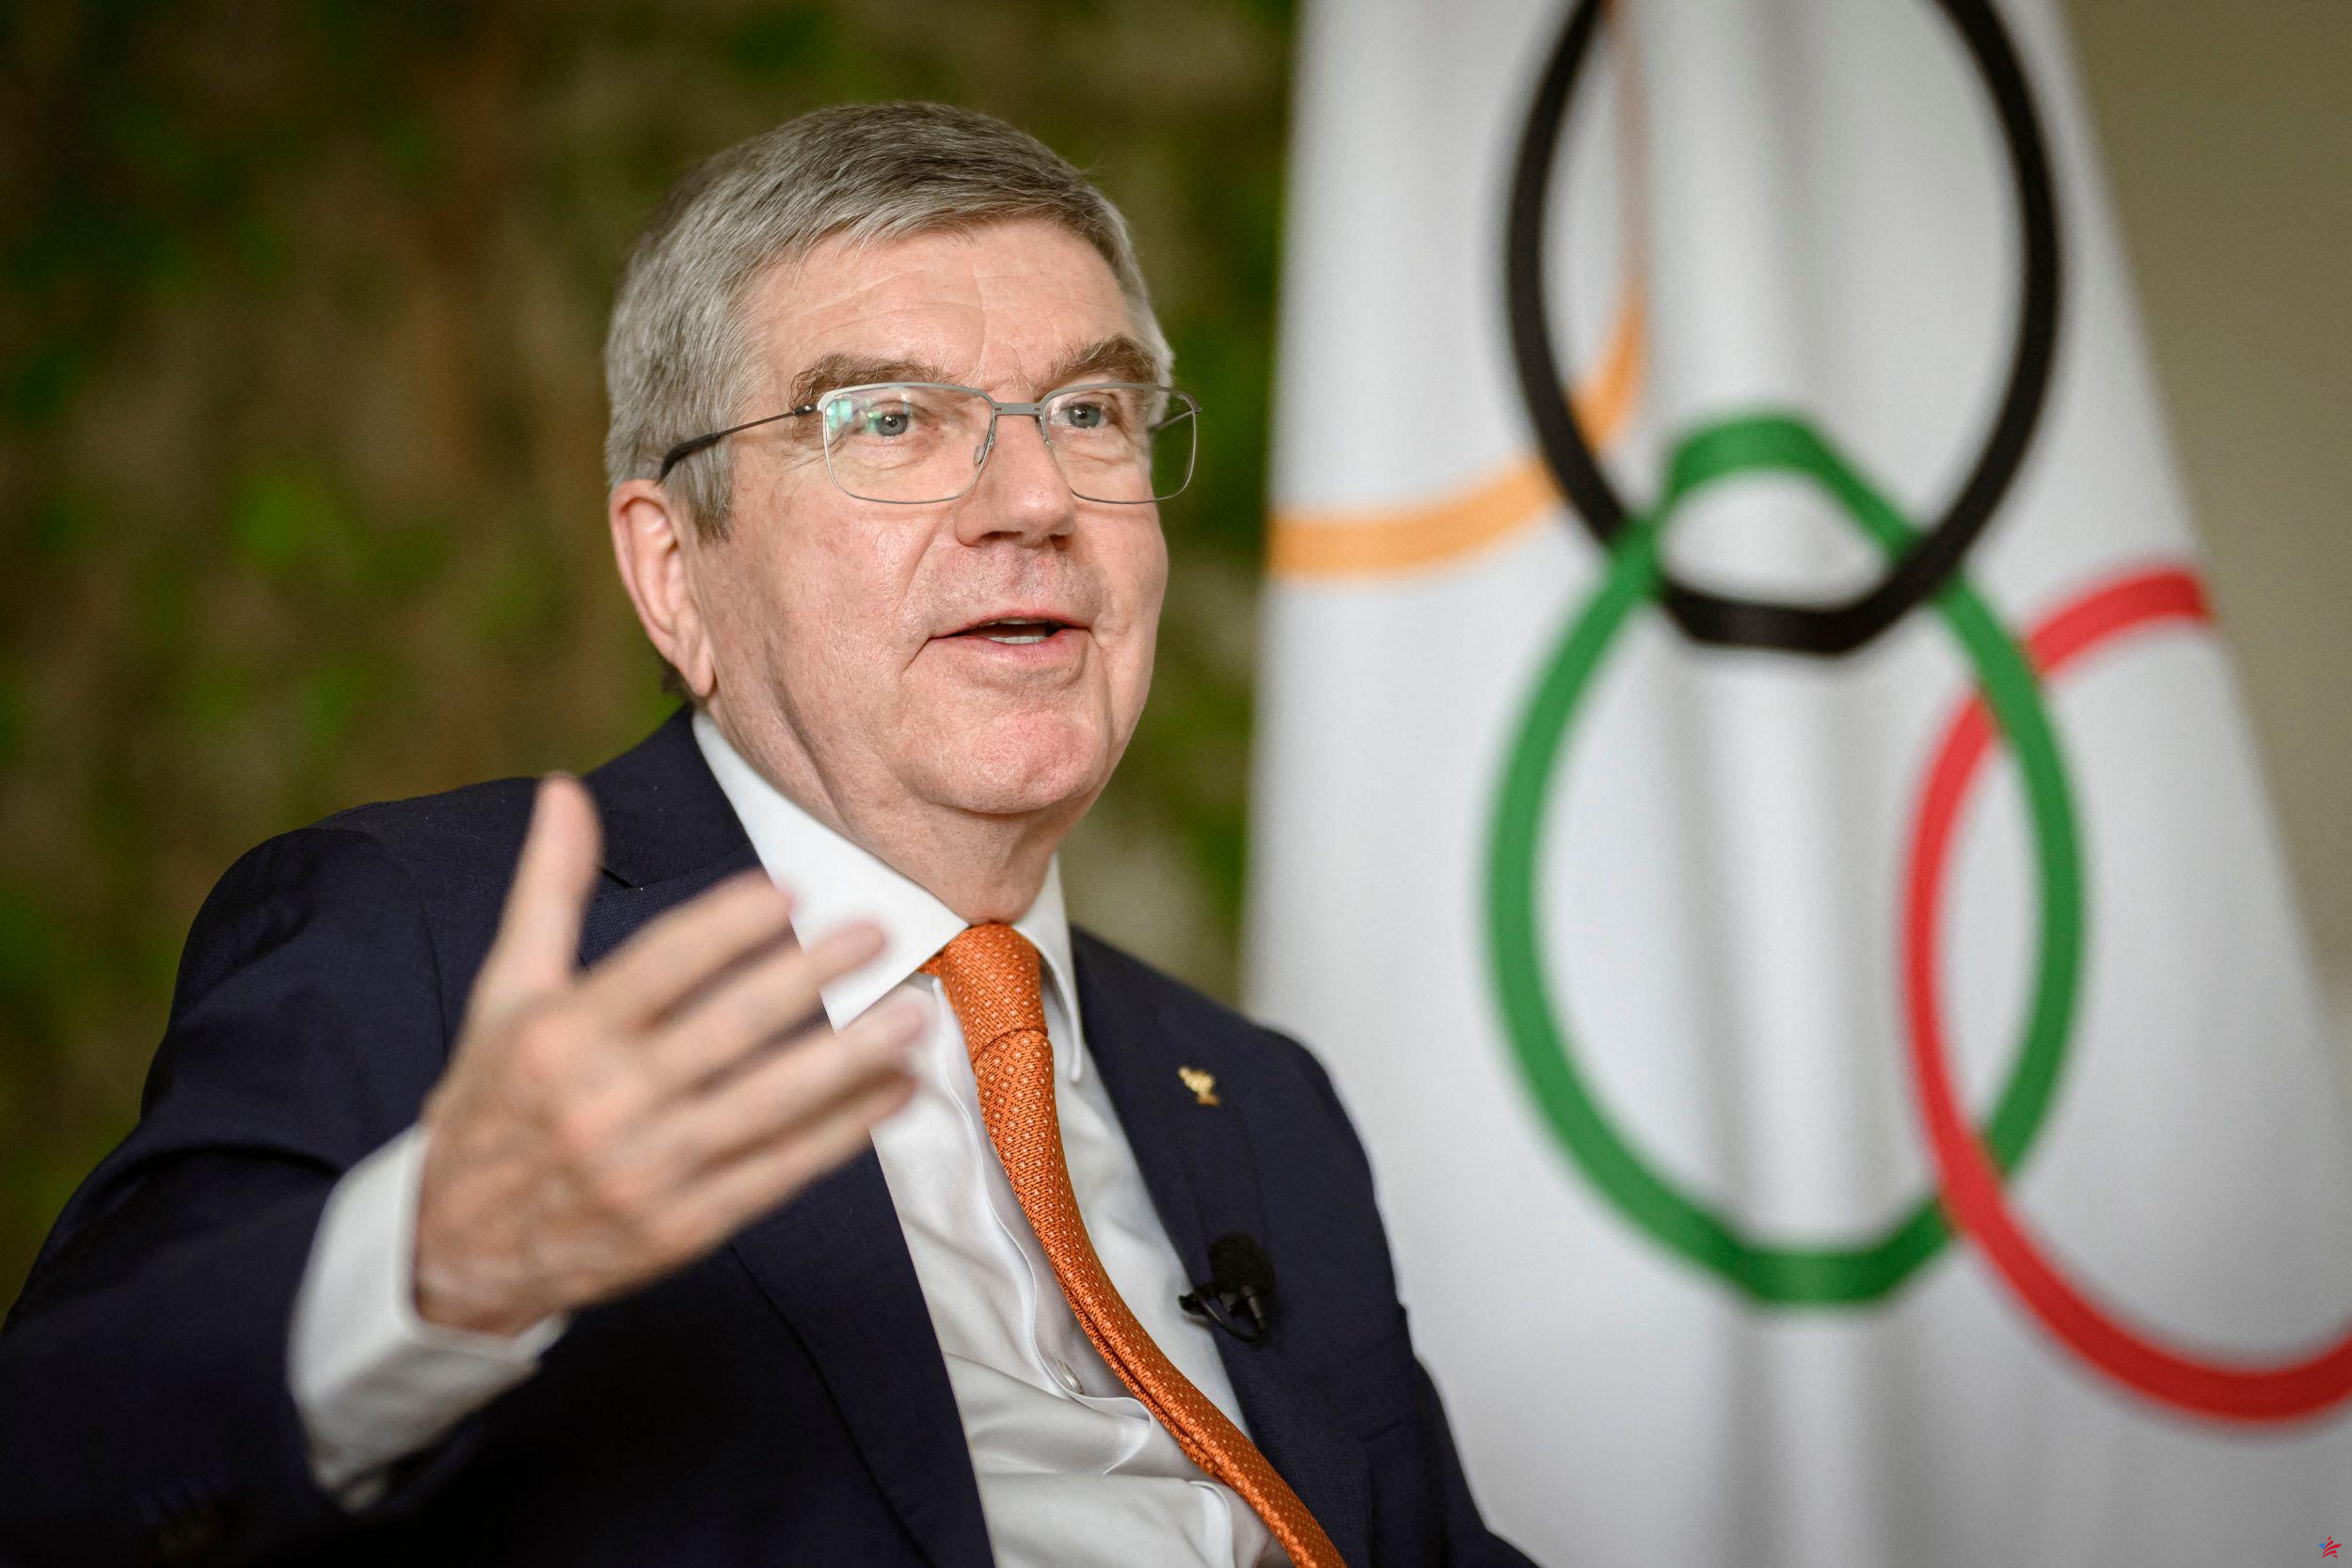 Juegos Olímpicos de 2024: bonificaciones para los medallistas de oro en atletismo, el COI lo desaprueba